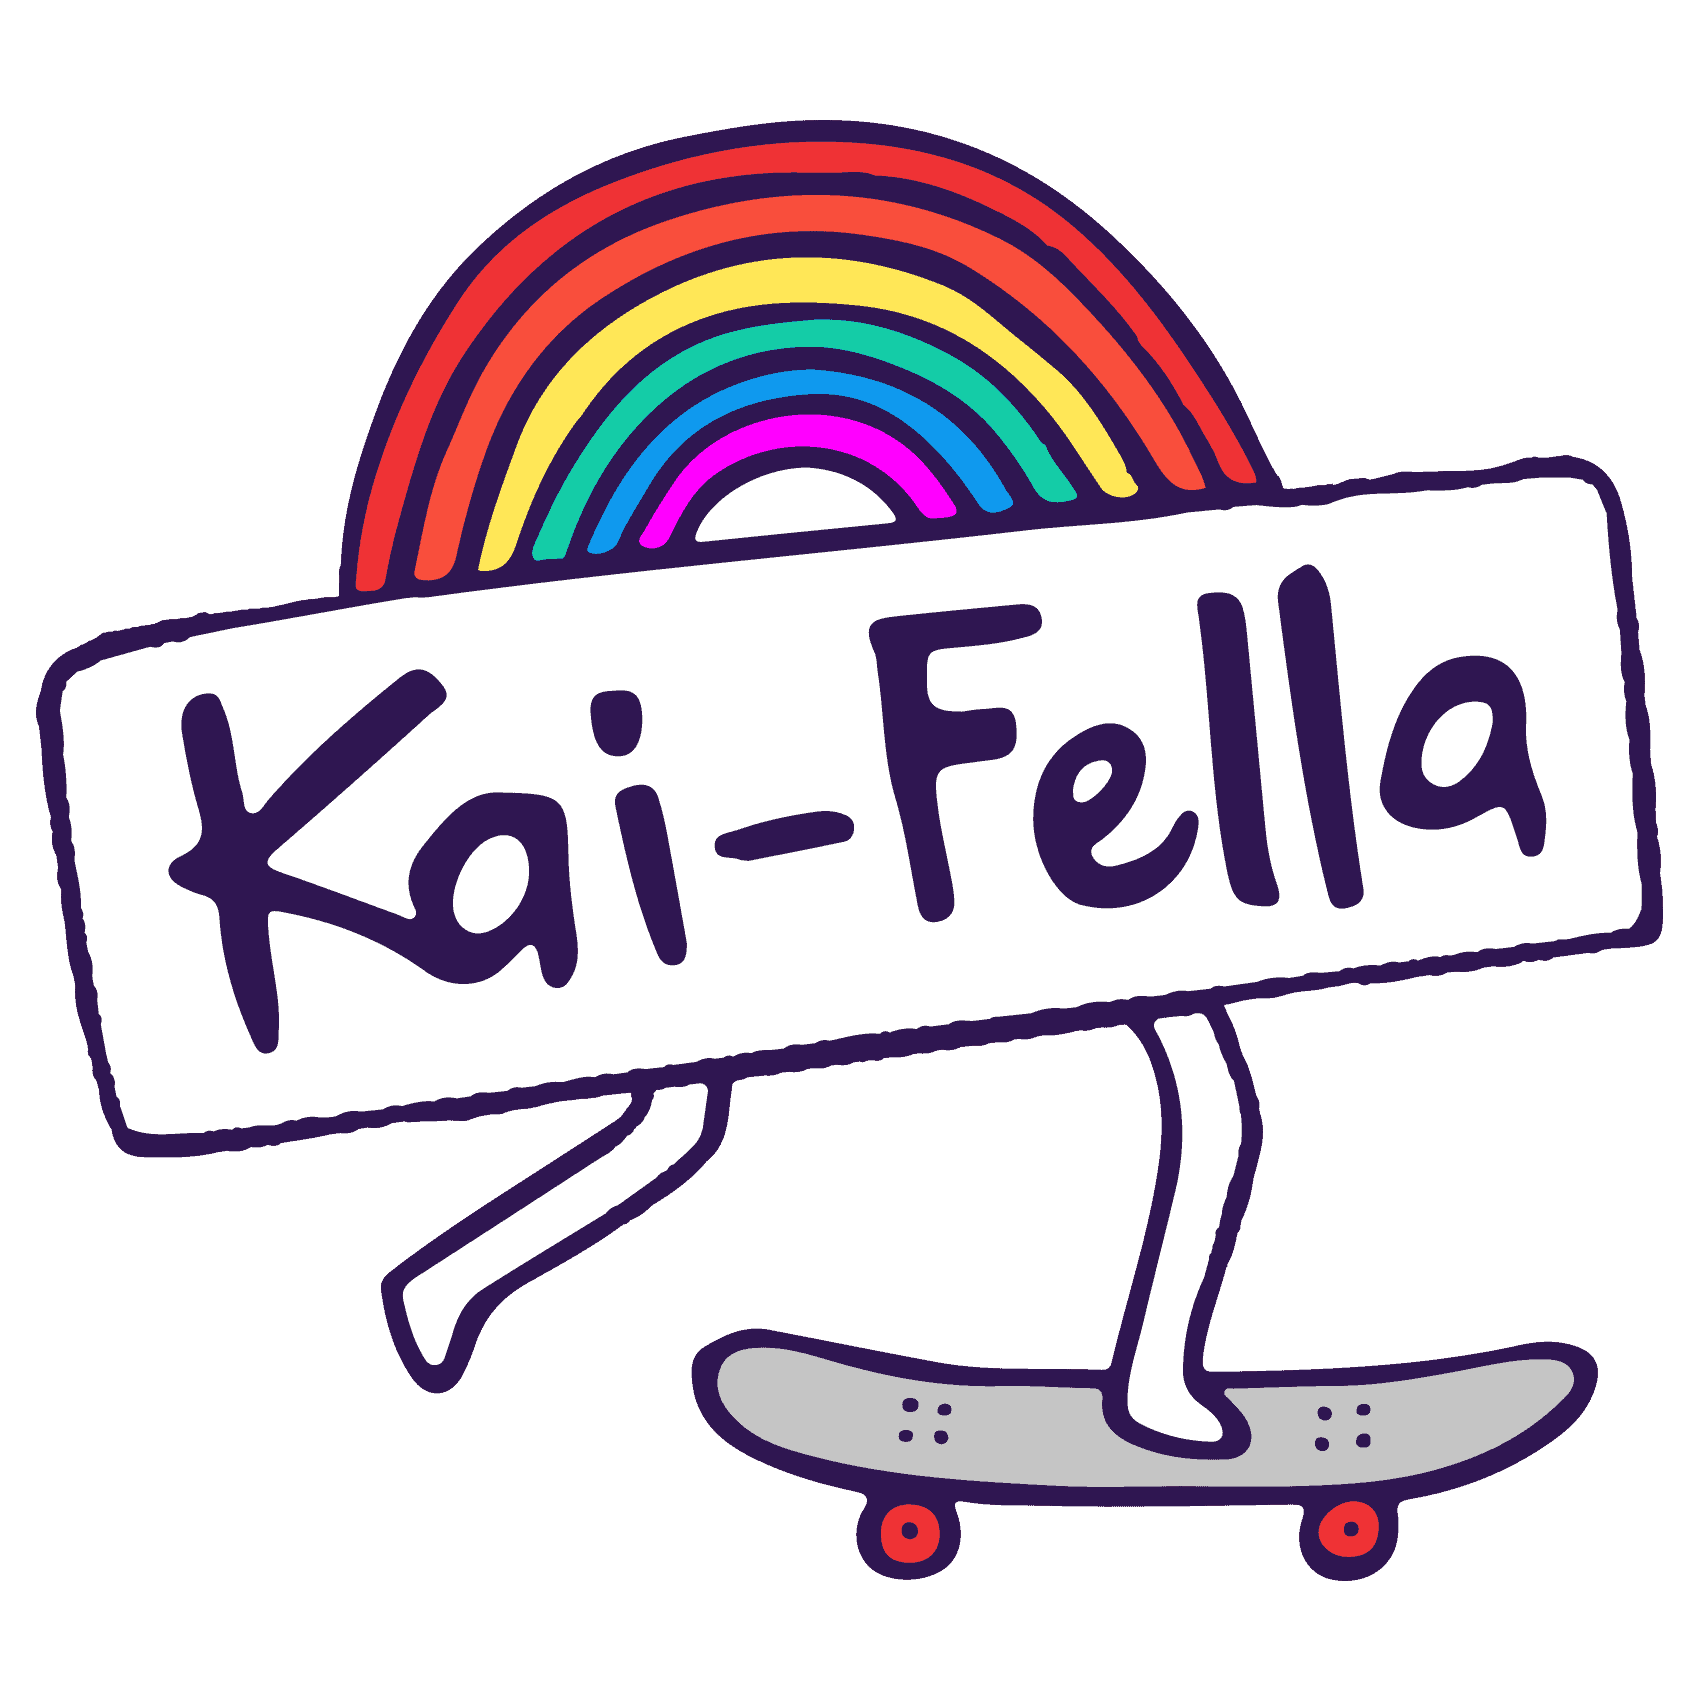 Kai-Fella Condensed Logo